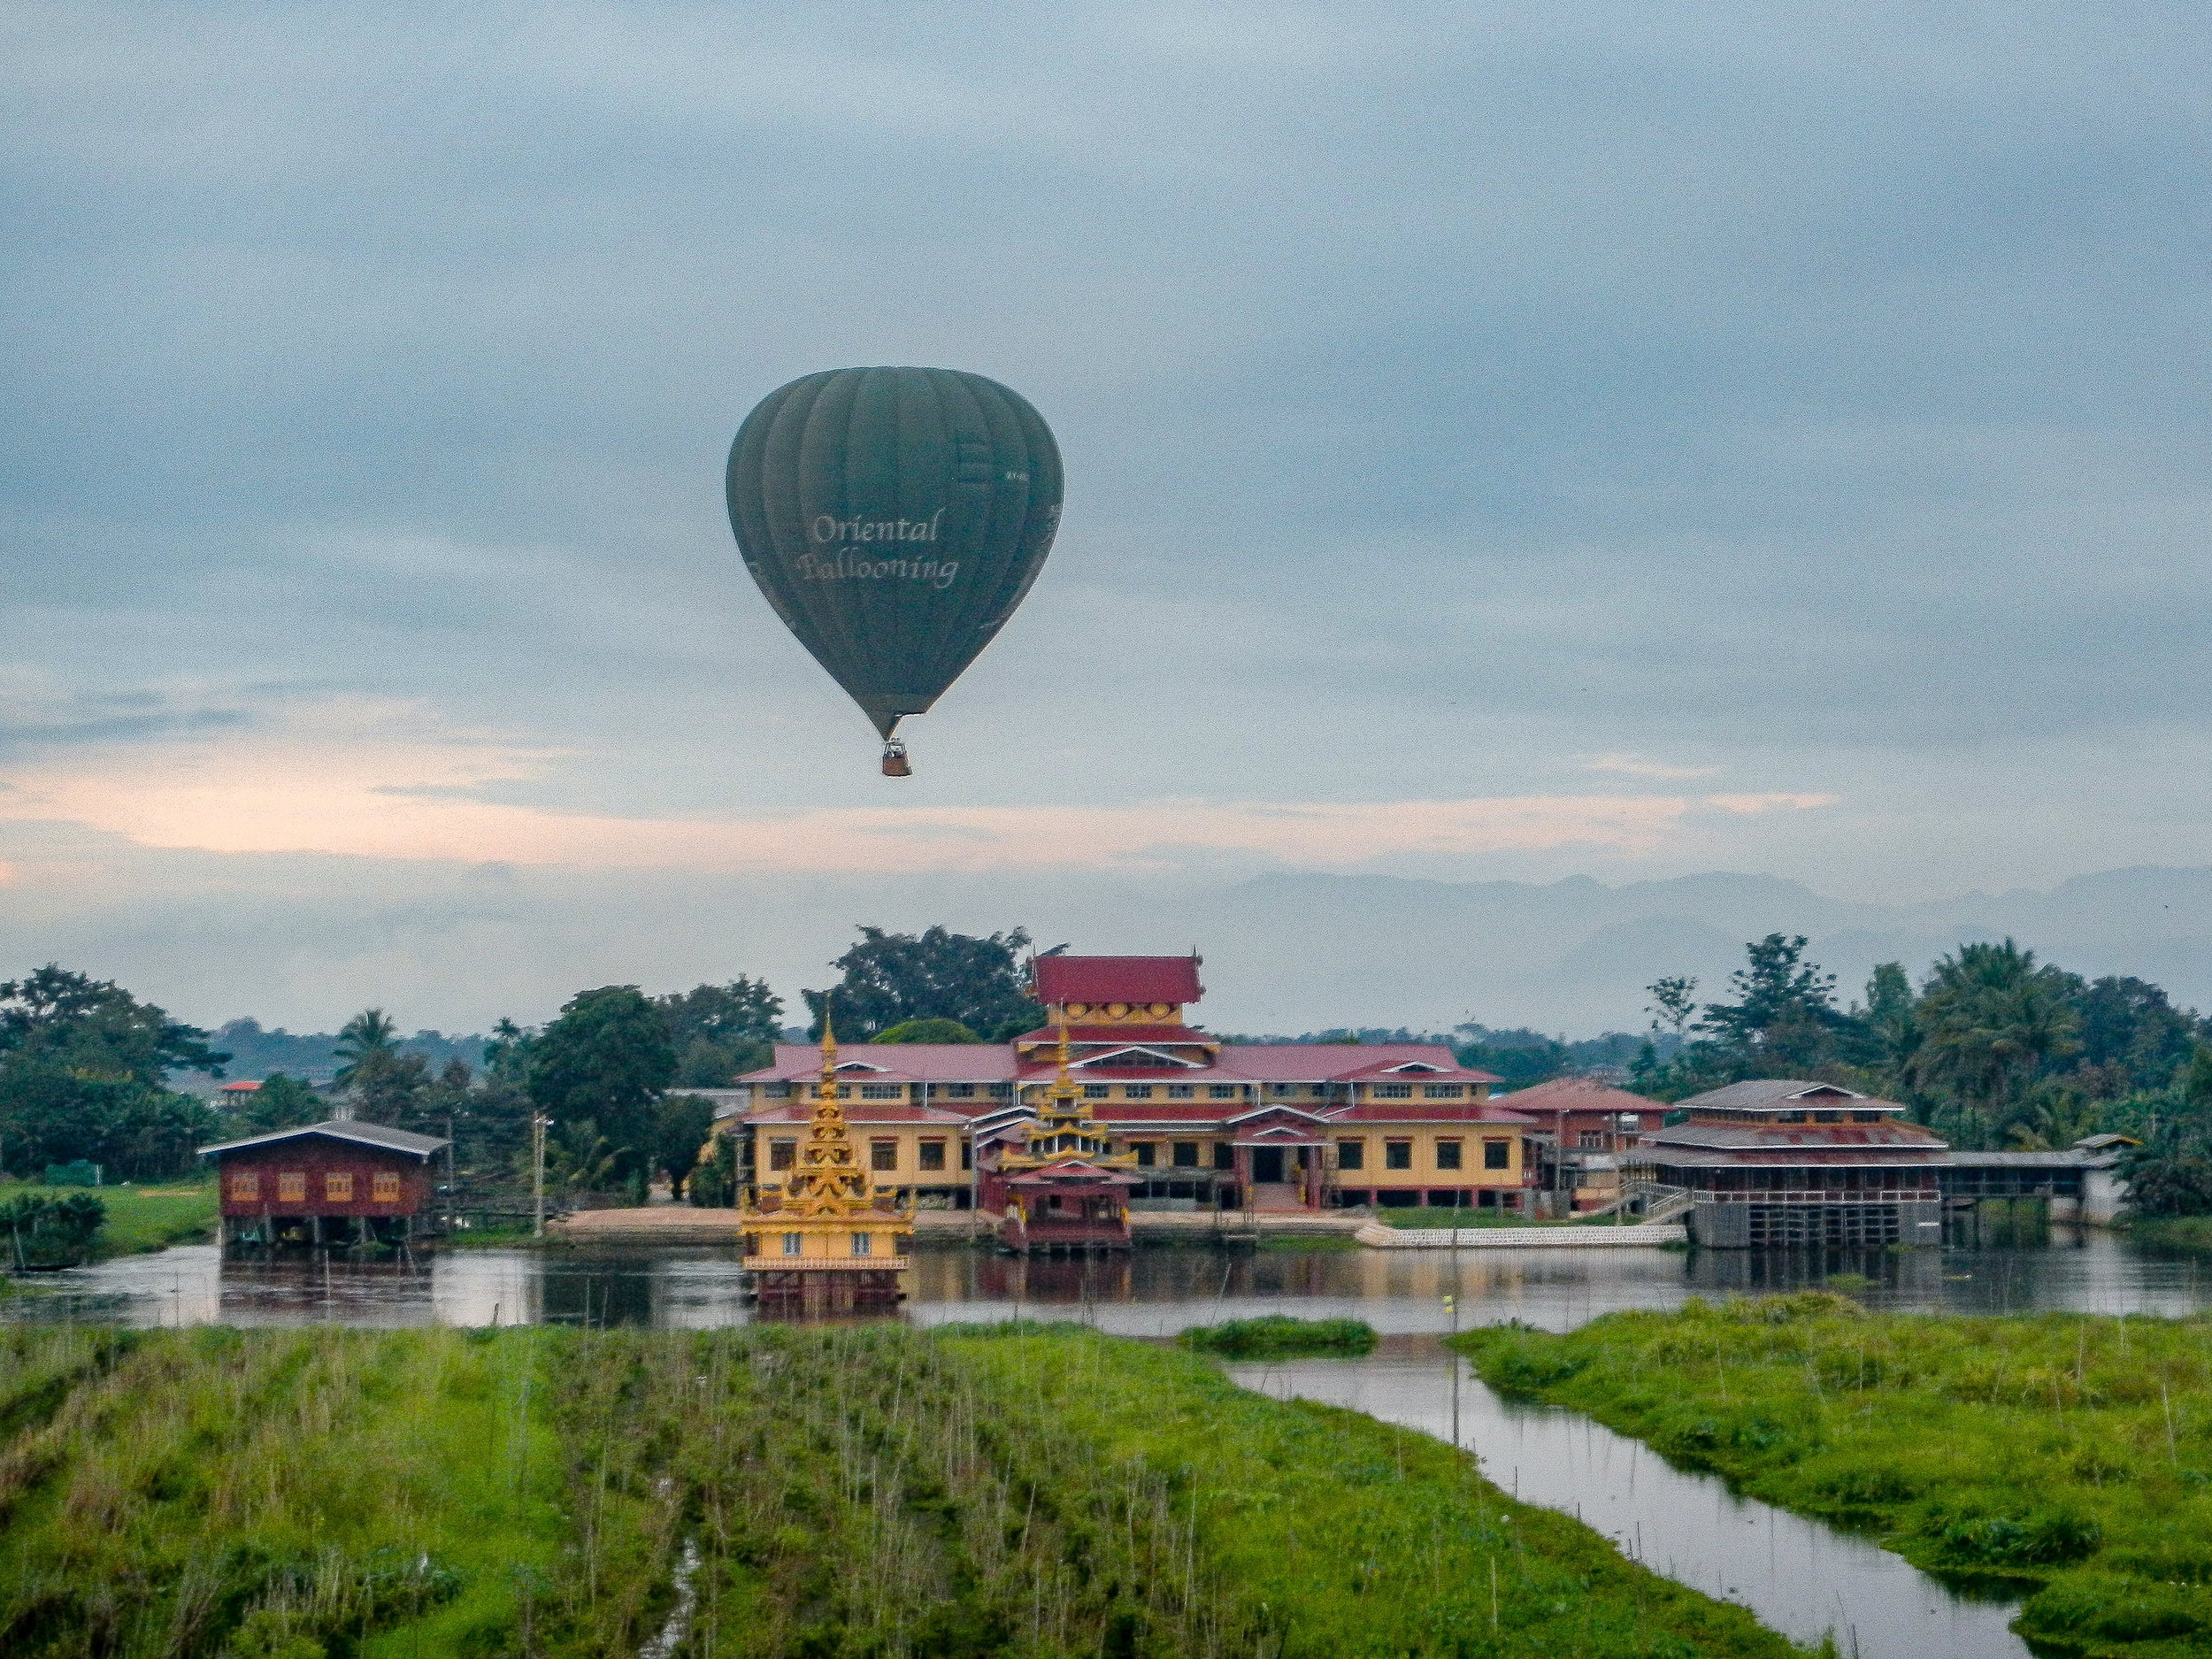 Oriental Ballooning hot-air balloon, Inle Lake, Myanmar